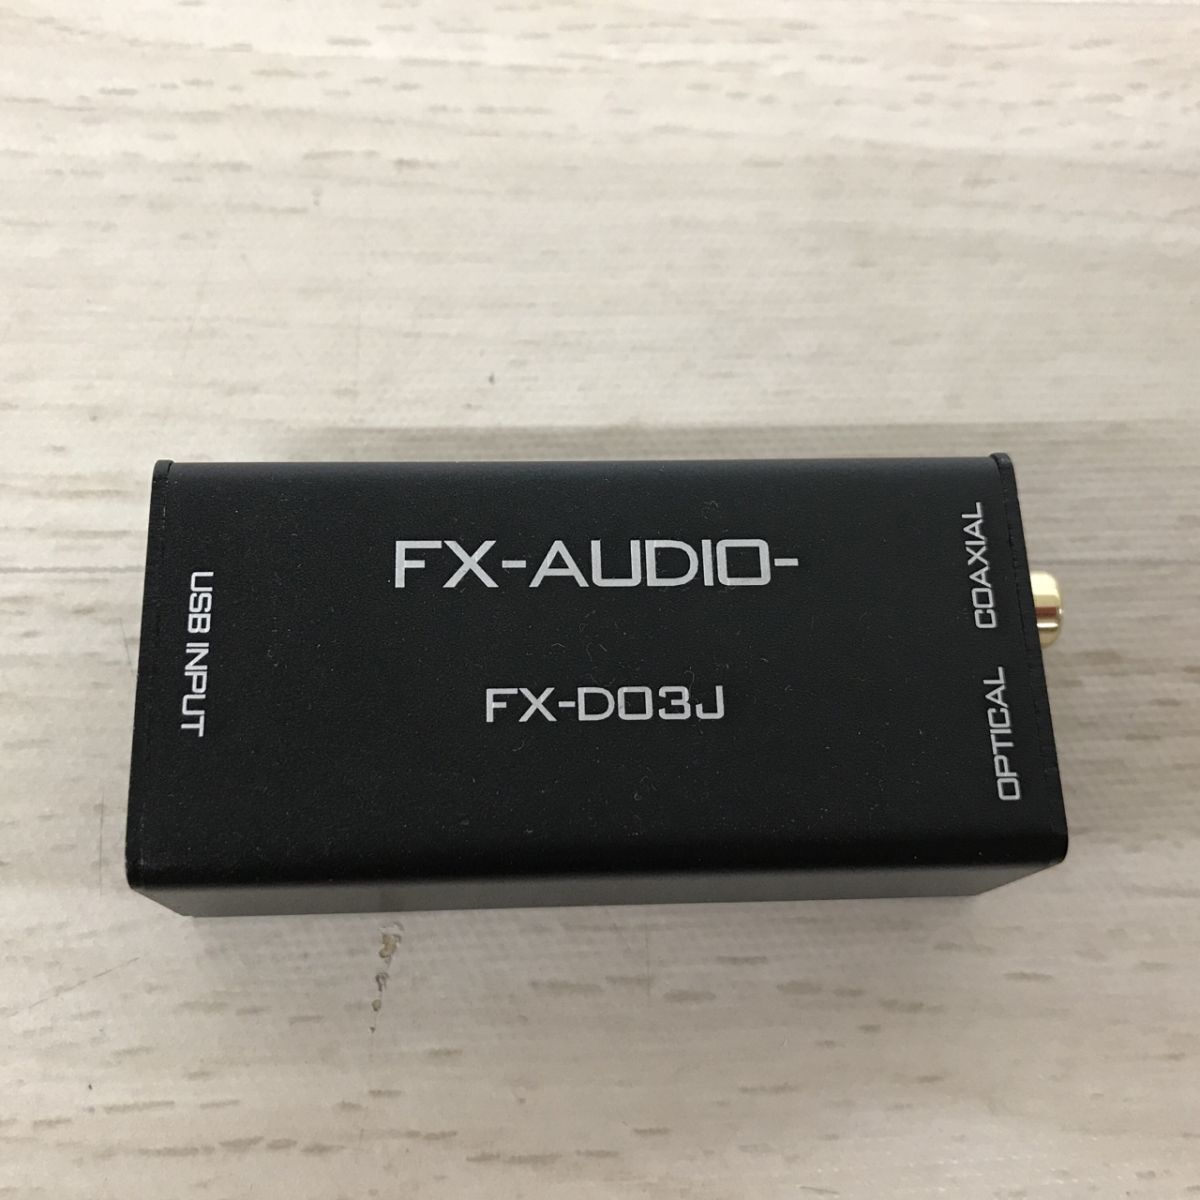 FX-AUDIO- FX-D03J USB-DDC USB接続 光 オプティカル 同軸 ハイレゾ対応[C3573]の画像1